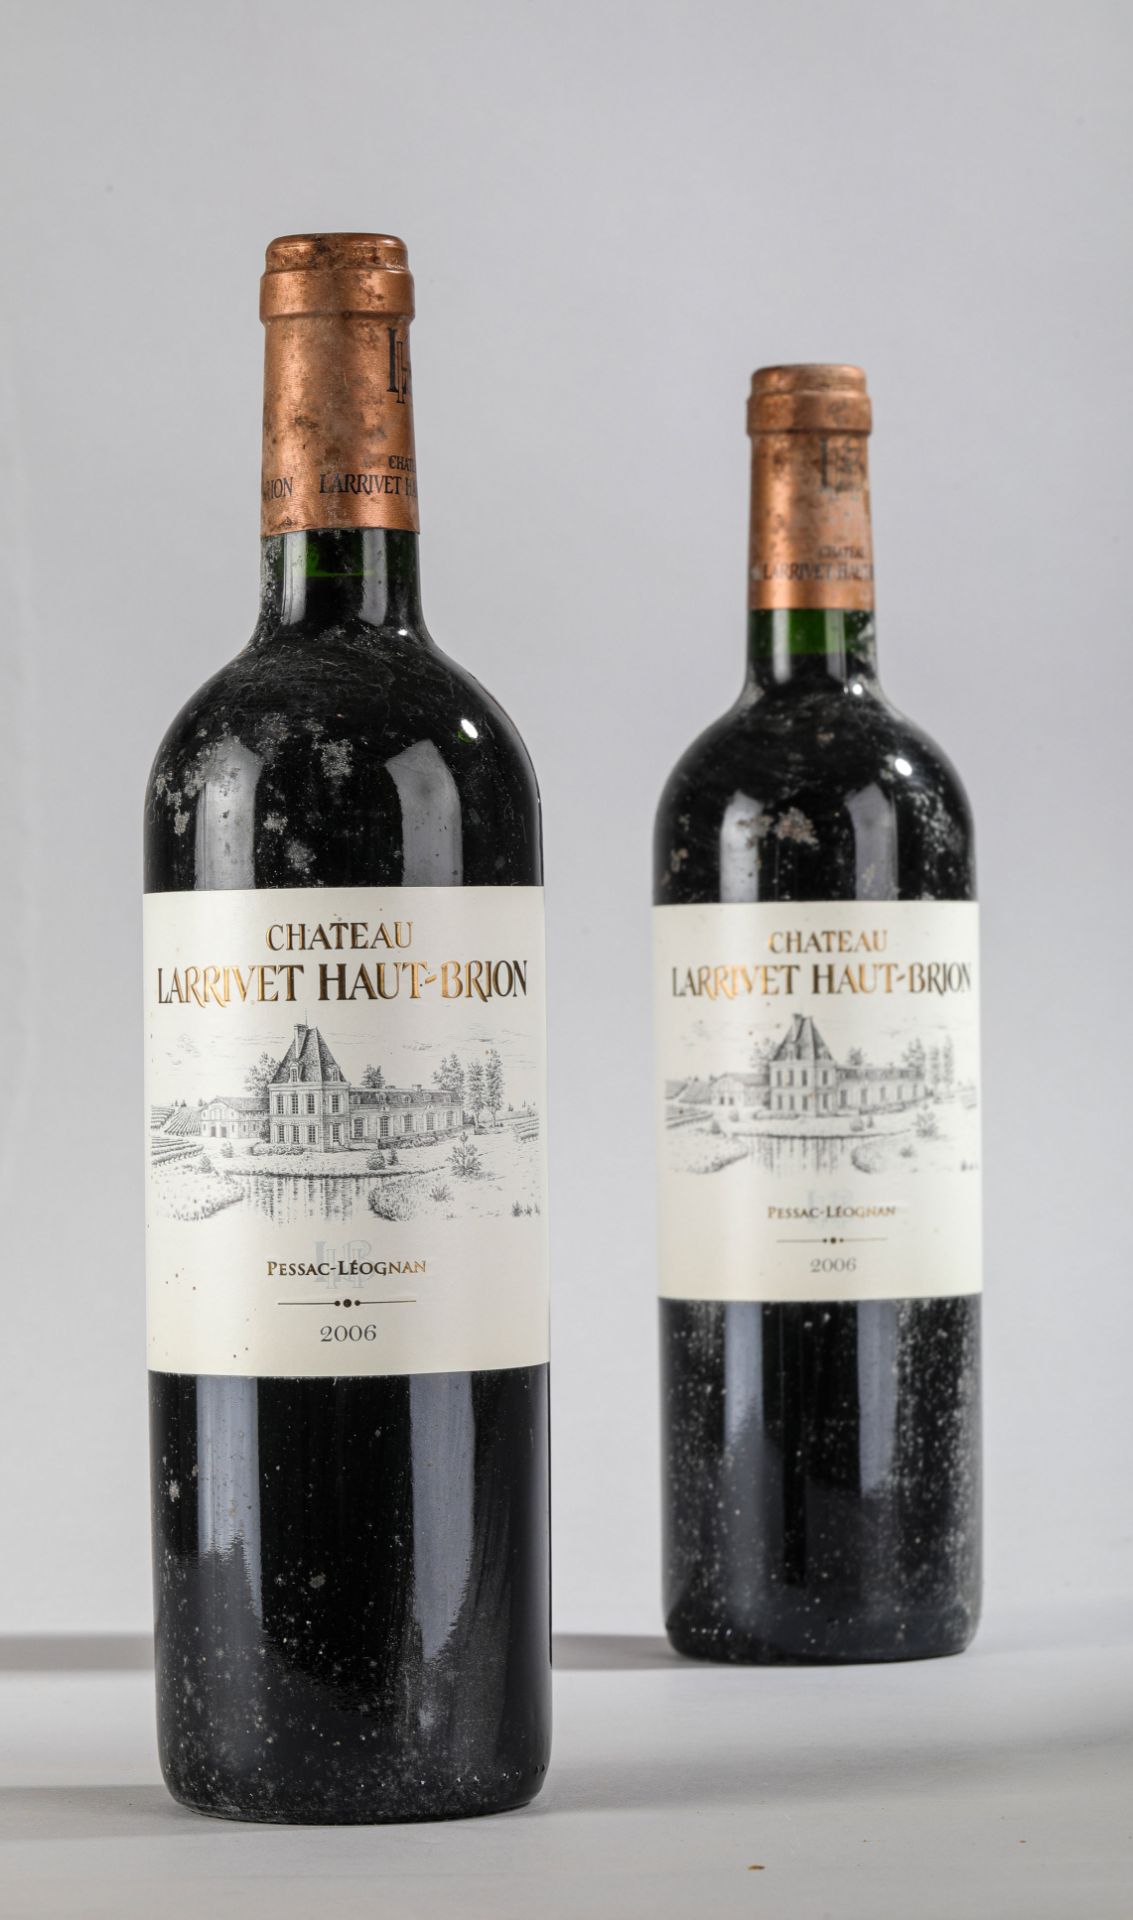 CHÂTEAU LARRIVET HAUT BRION. 2006. 2 bouteilles. Pessac Léognan. - Image 2 of 4